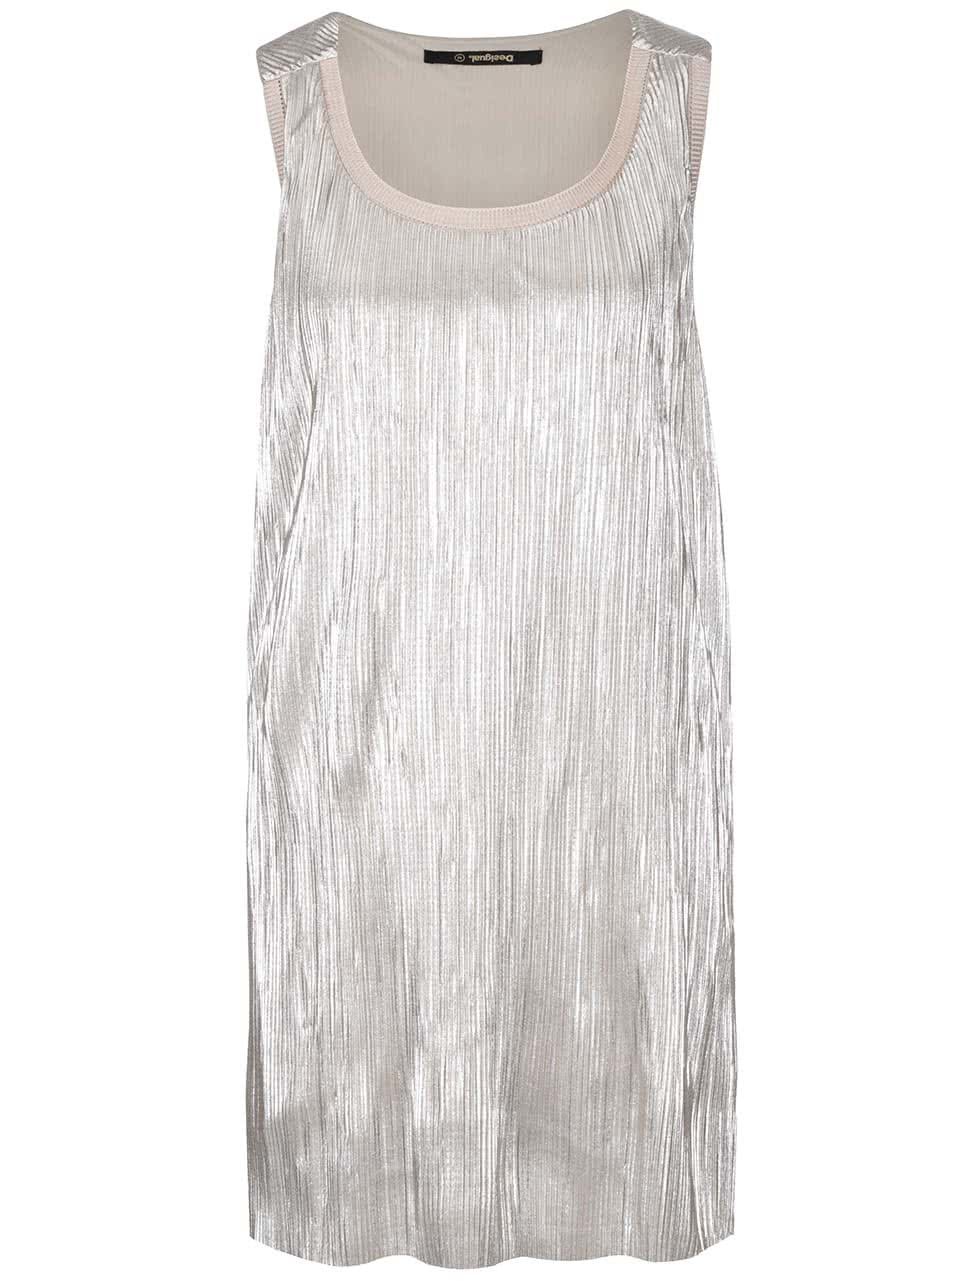 Plisované šaty ve stříbrné barvě Desigual Maribel